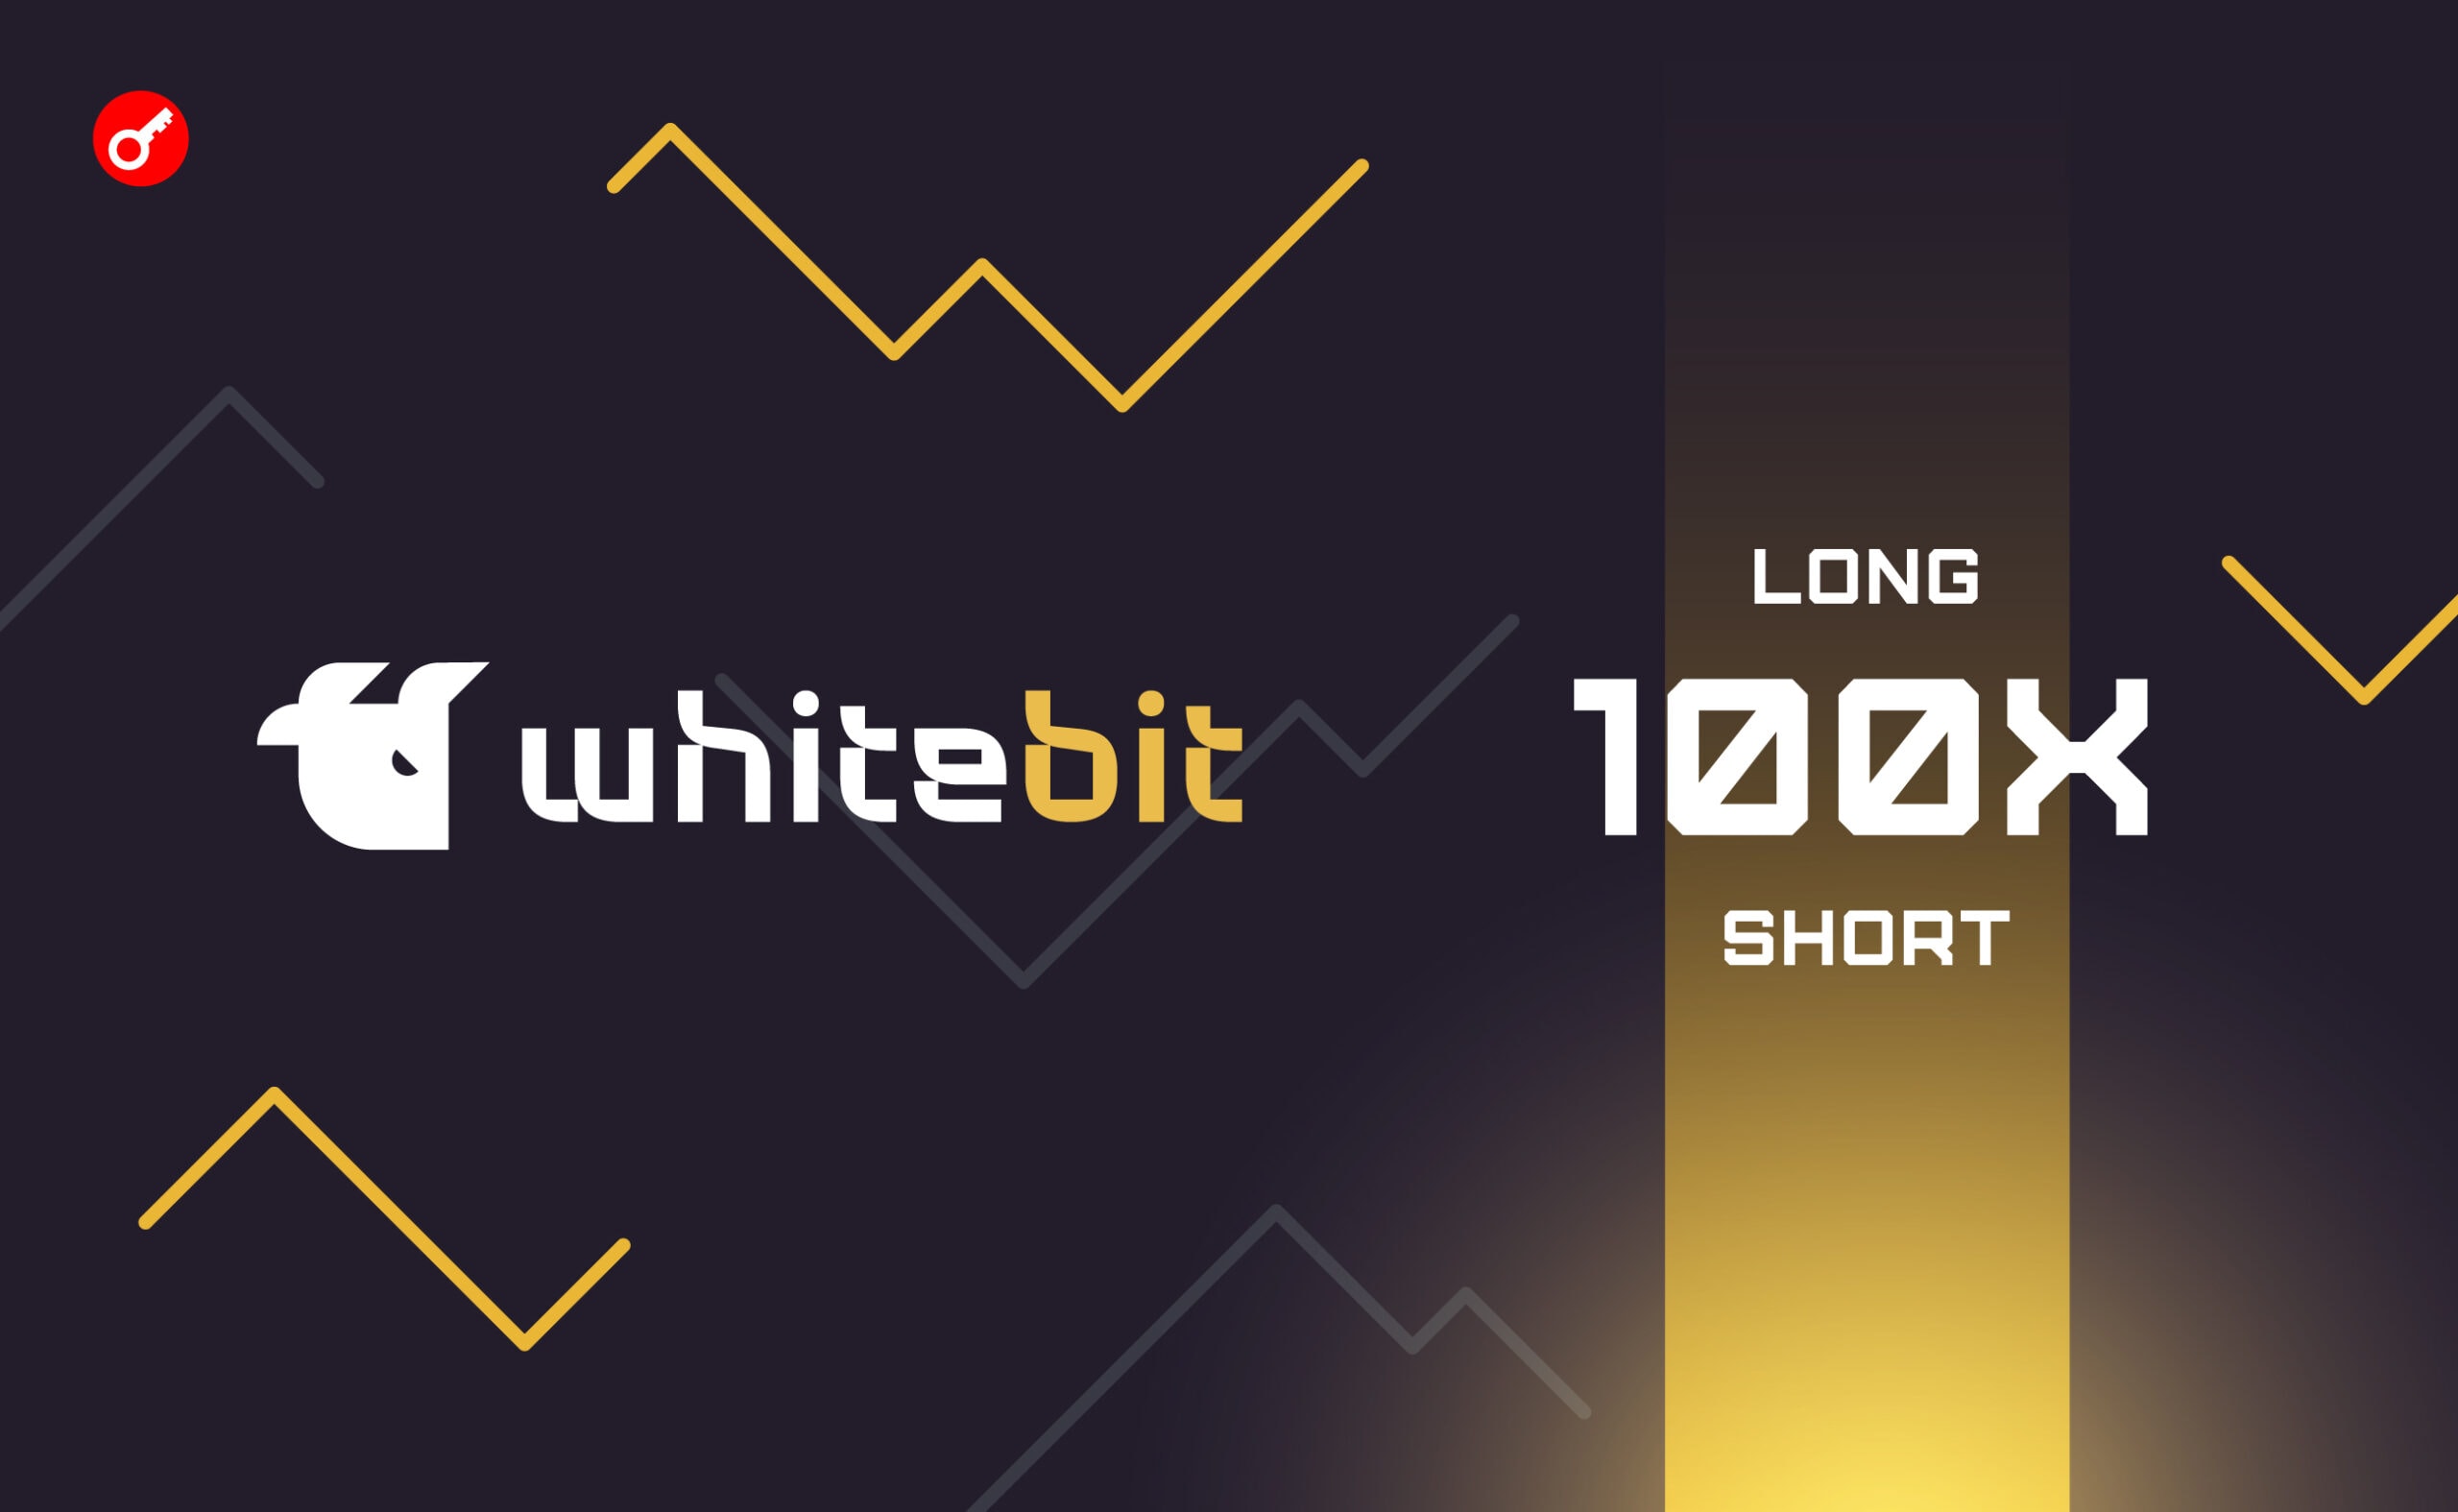 WhiteBIT збільшила максимальне кредитне плече для ф’ючерсної торгівлі до 100х. Головний колаж новини.